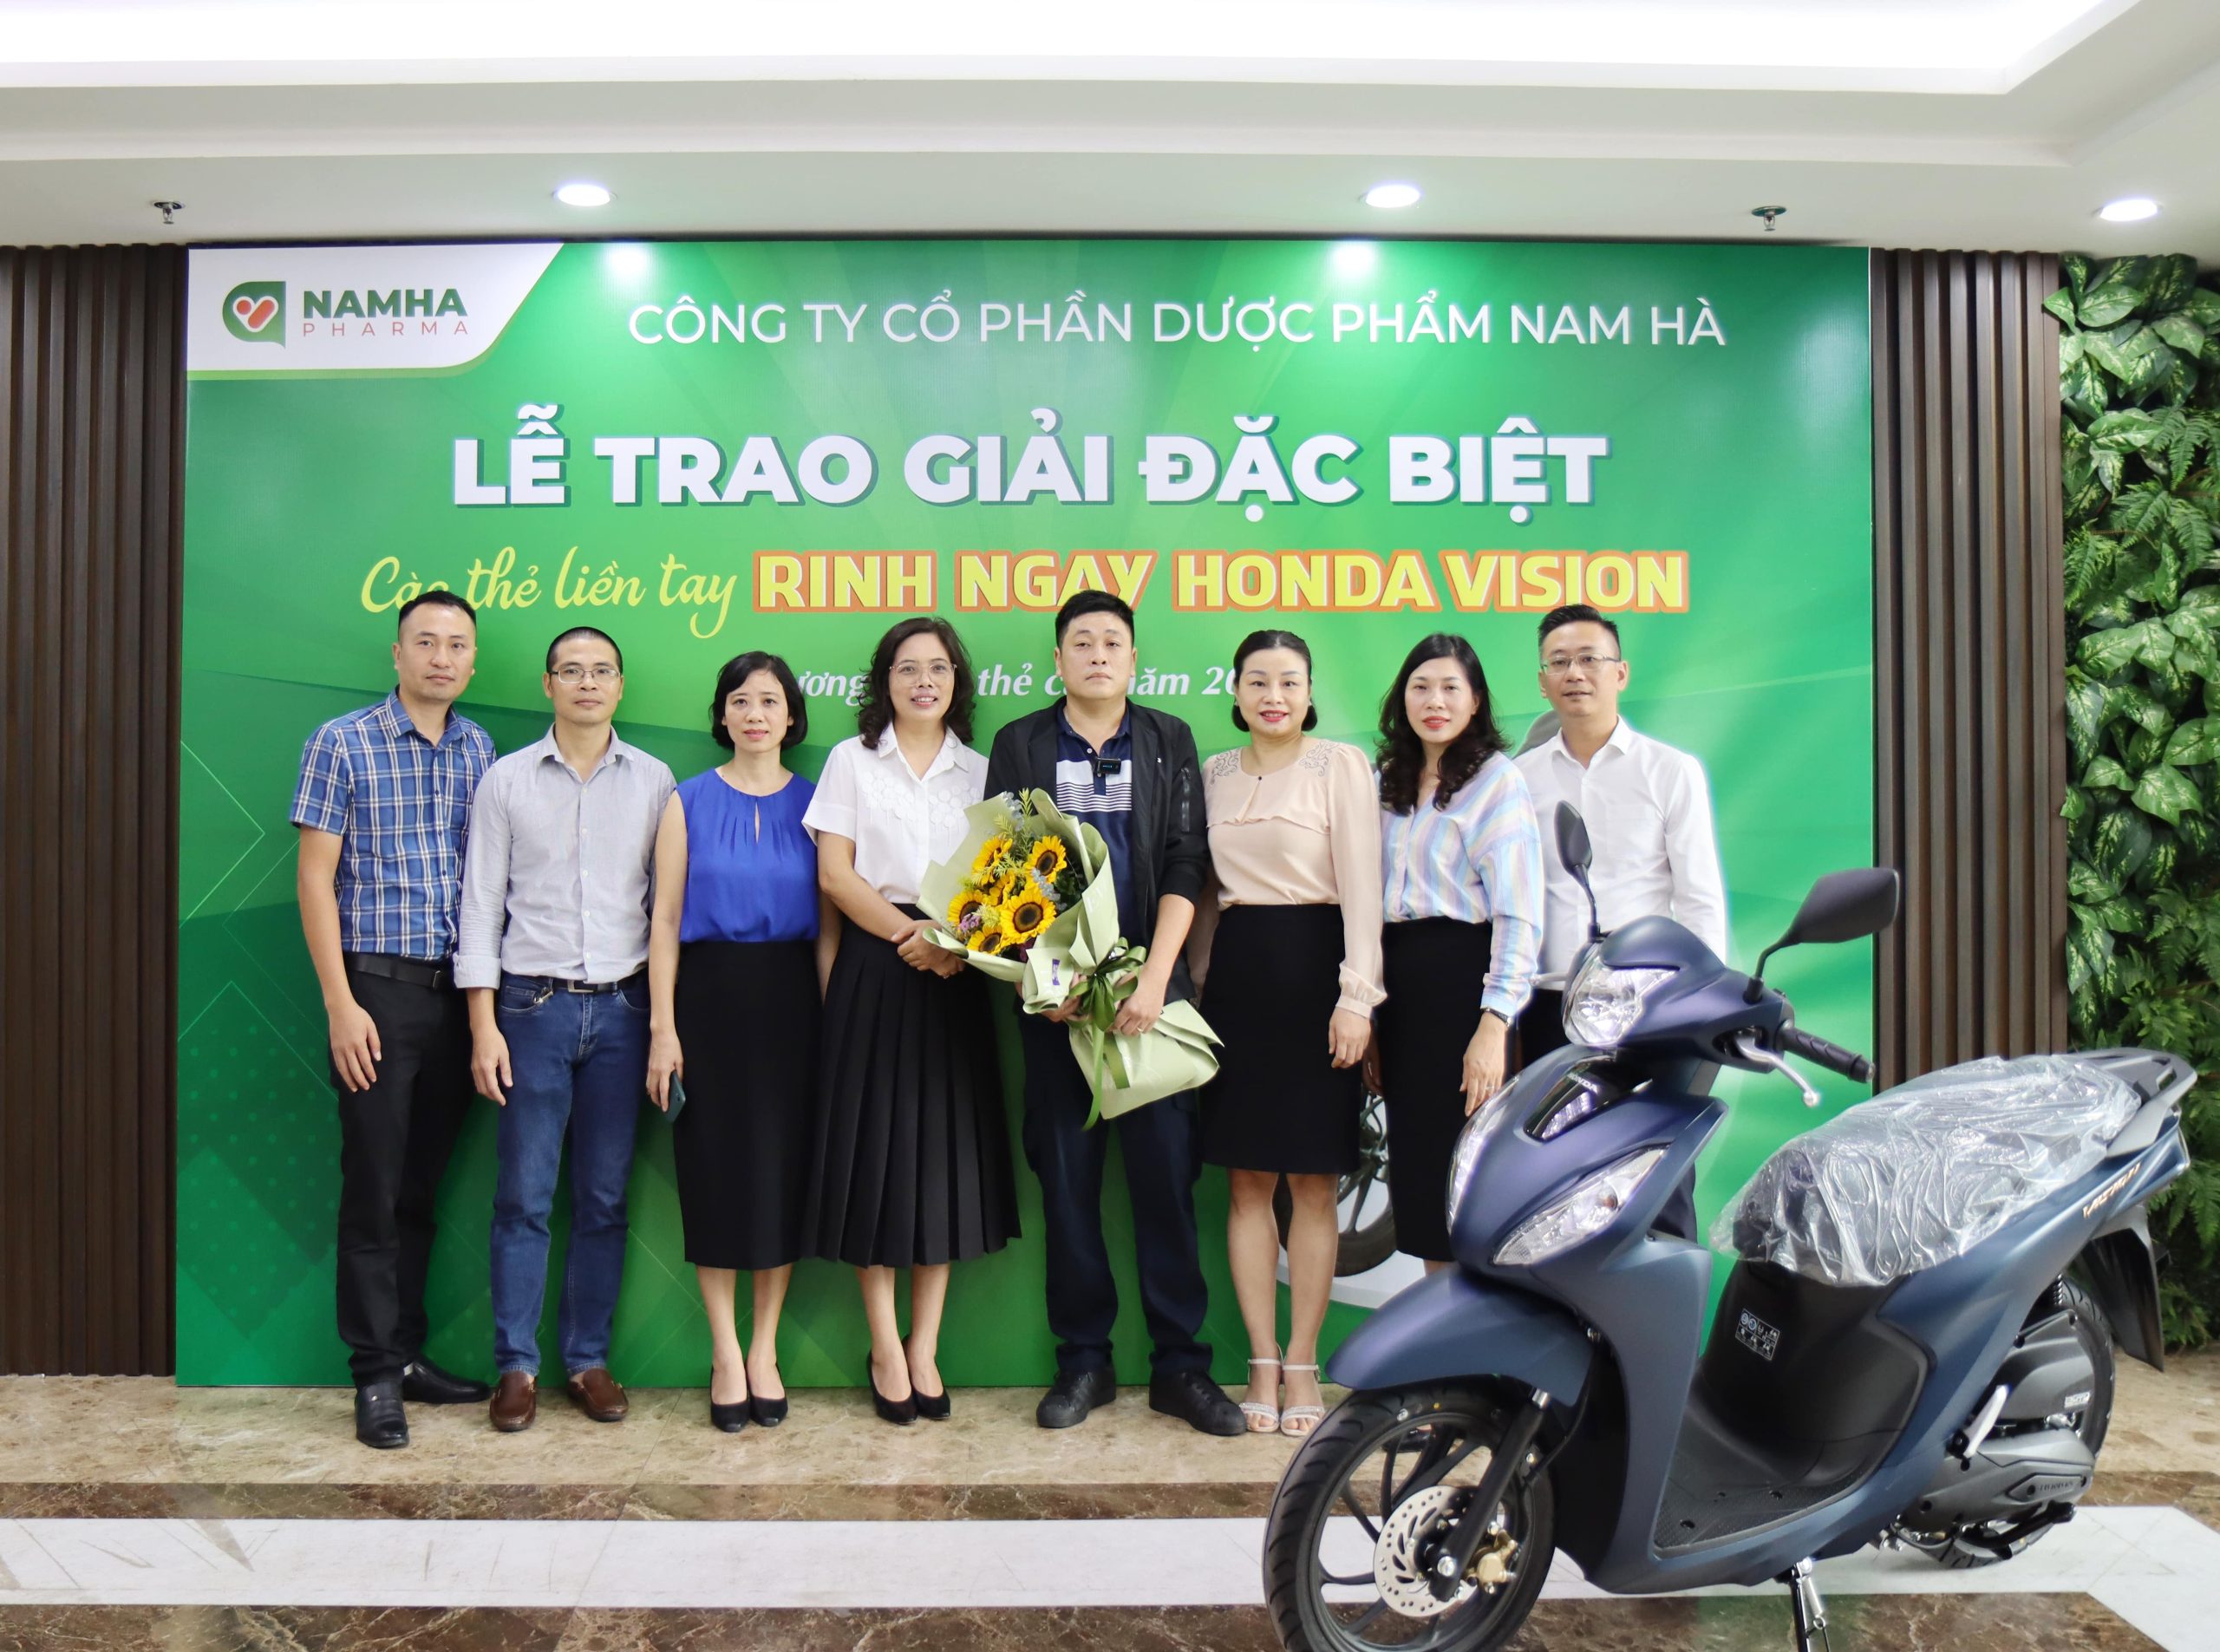 Dược Nam Hà trao giải thưởng xe Honda Vision cho khách hàng